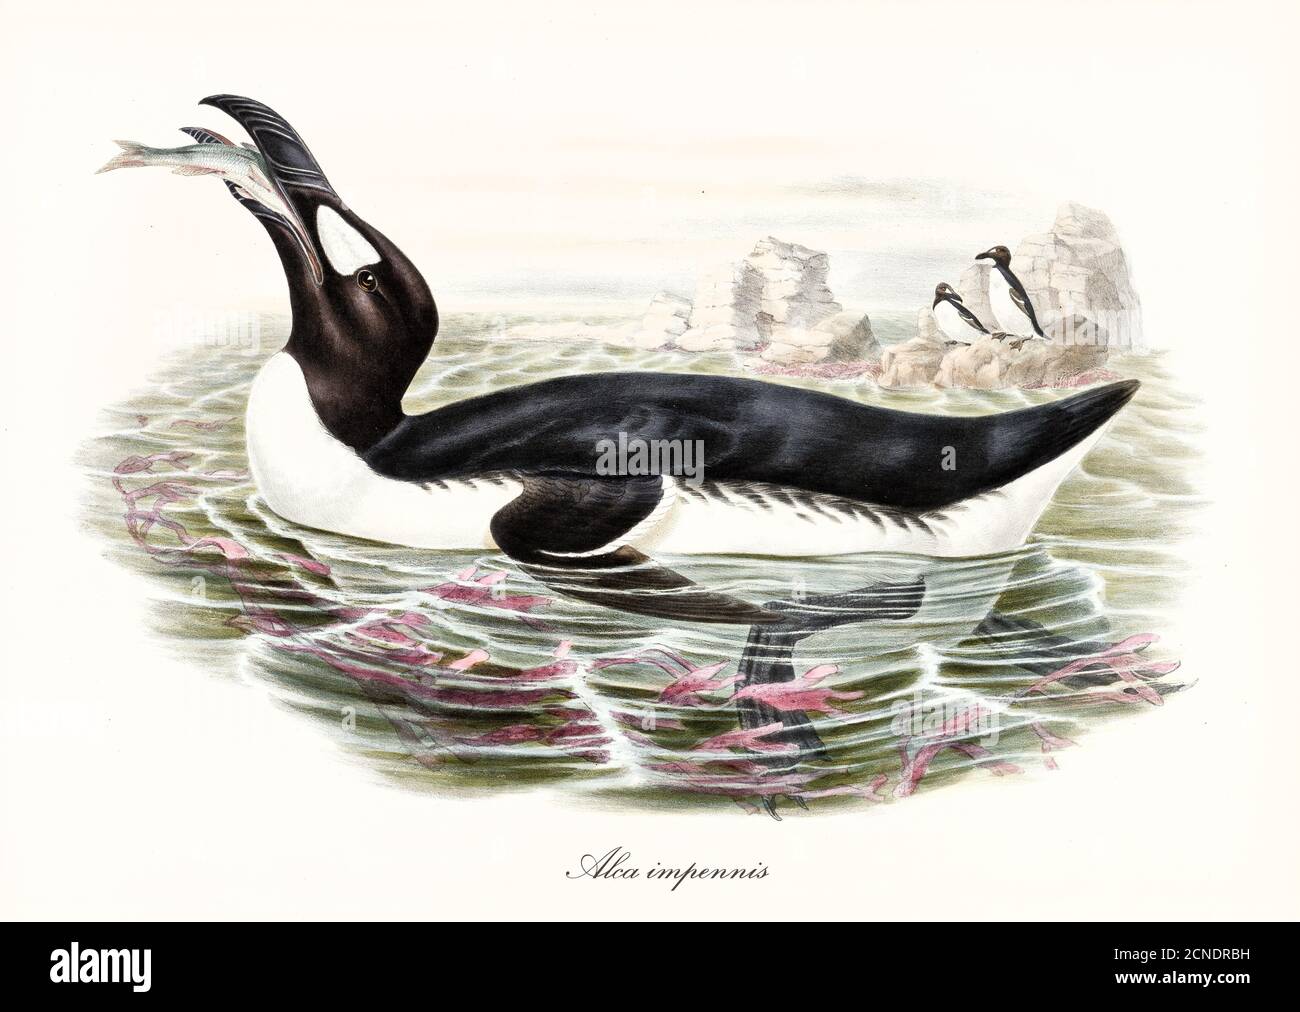 Grande uccello acquatico grasso Grande Auk (Pinguinus impennis) estinto. Mangia il pesce in acqua, esemplars su una roccia in background. Arte di John Gould 1862-1873 Foto Stock